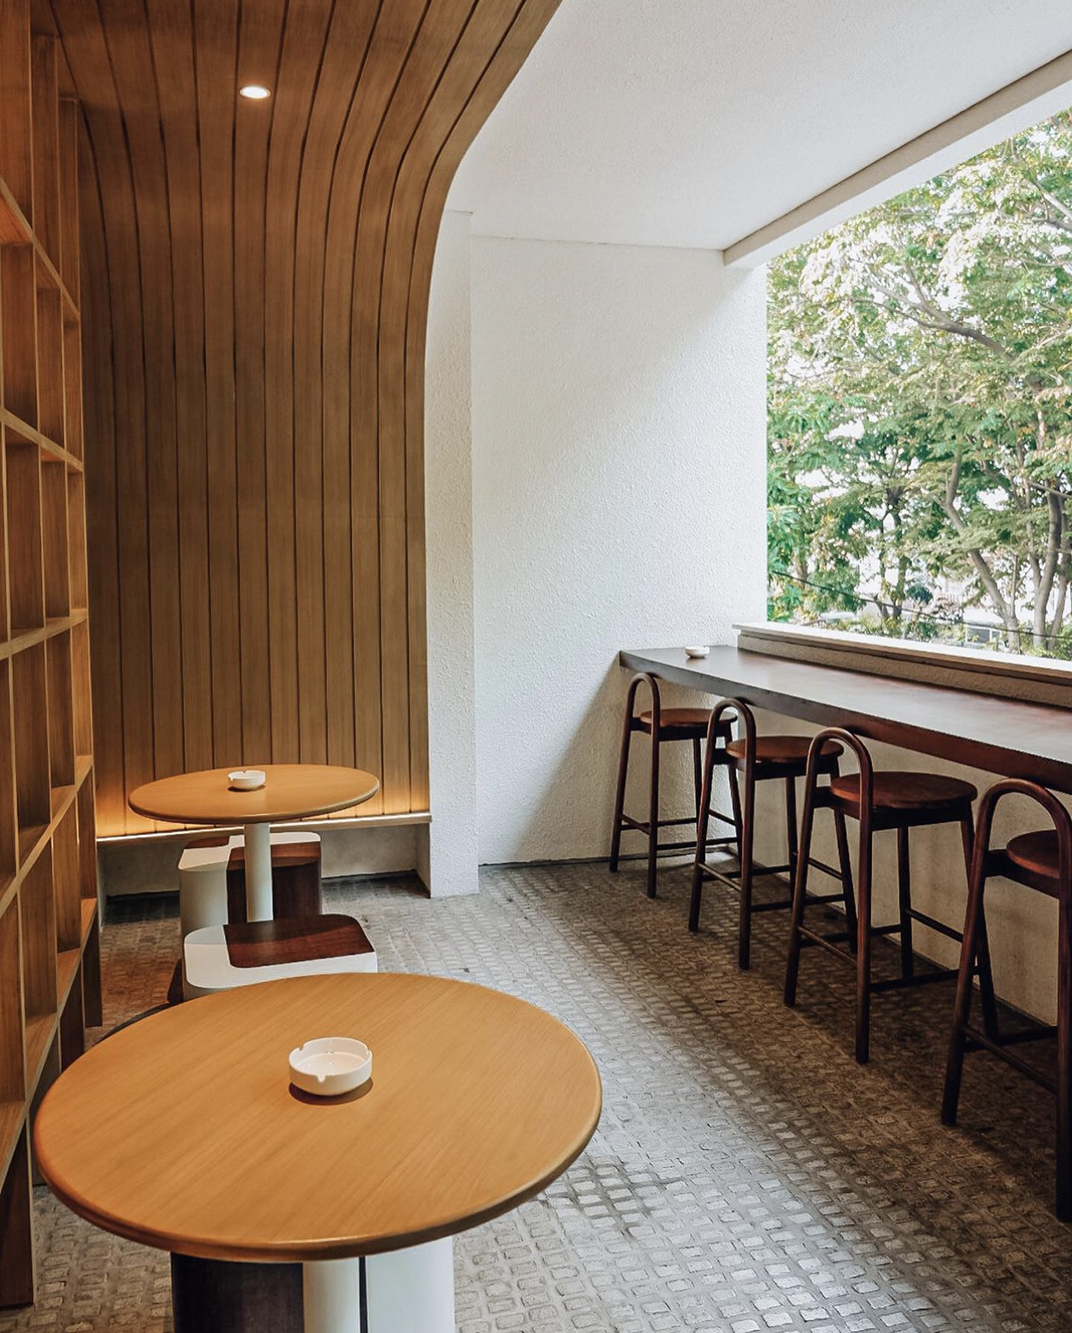 面包店DEMORE Jakarta 印度 深圳 上海 北京 广州 武汉 咖啡店 餐饮商业 logo设计 vi设计 空间设计